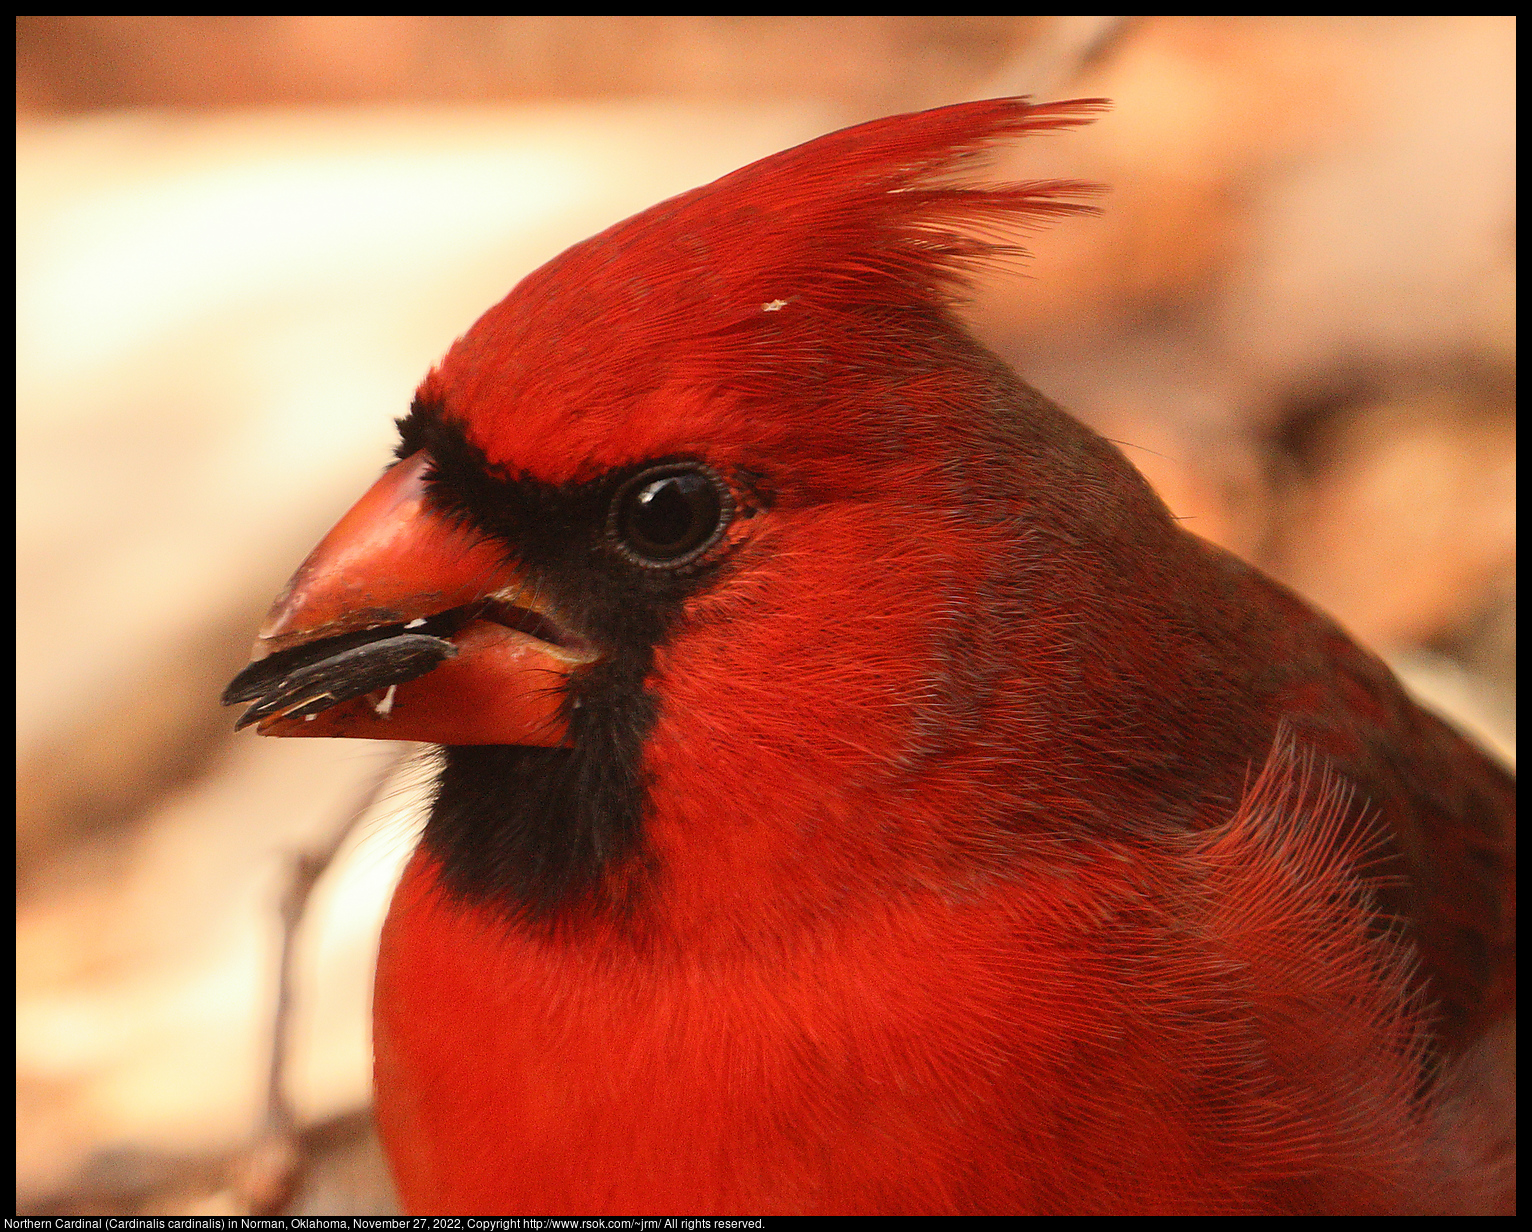 Northern Cardinal (Cardinalis cardinalis) in Norman, Oklahoma, November 27, 2022